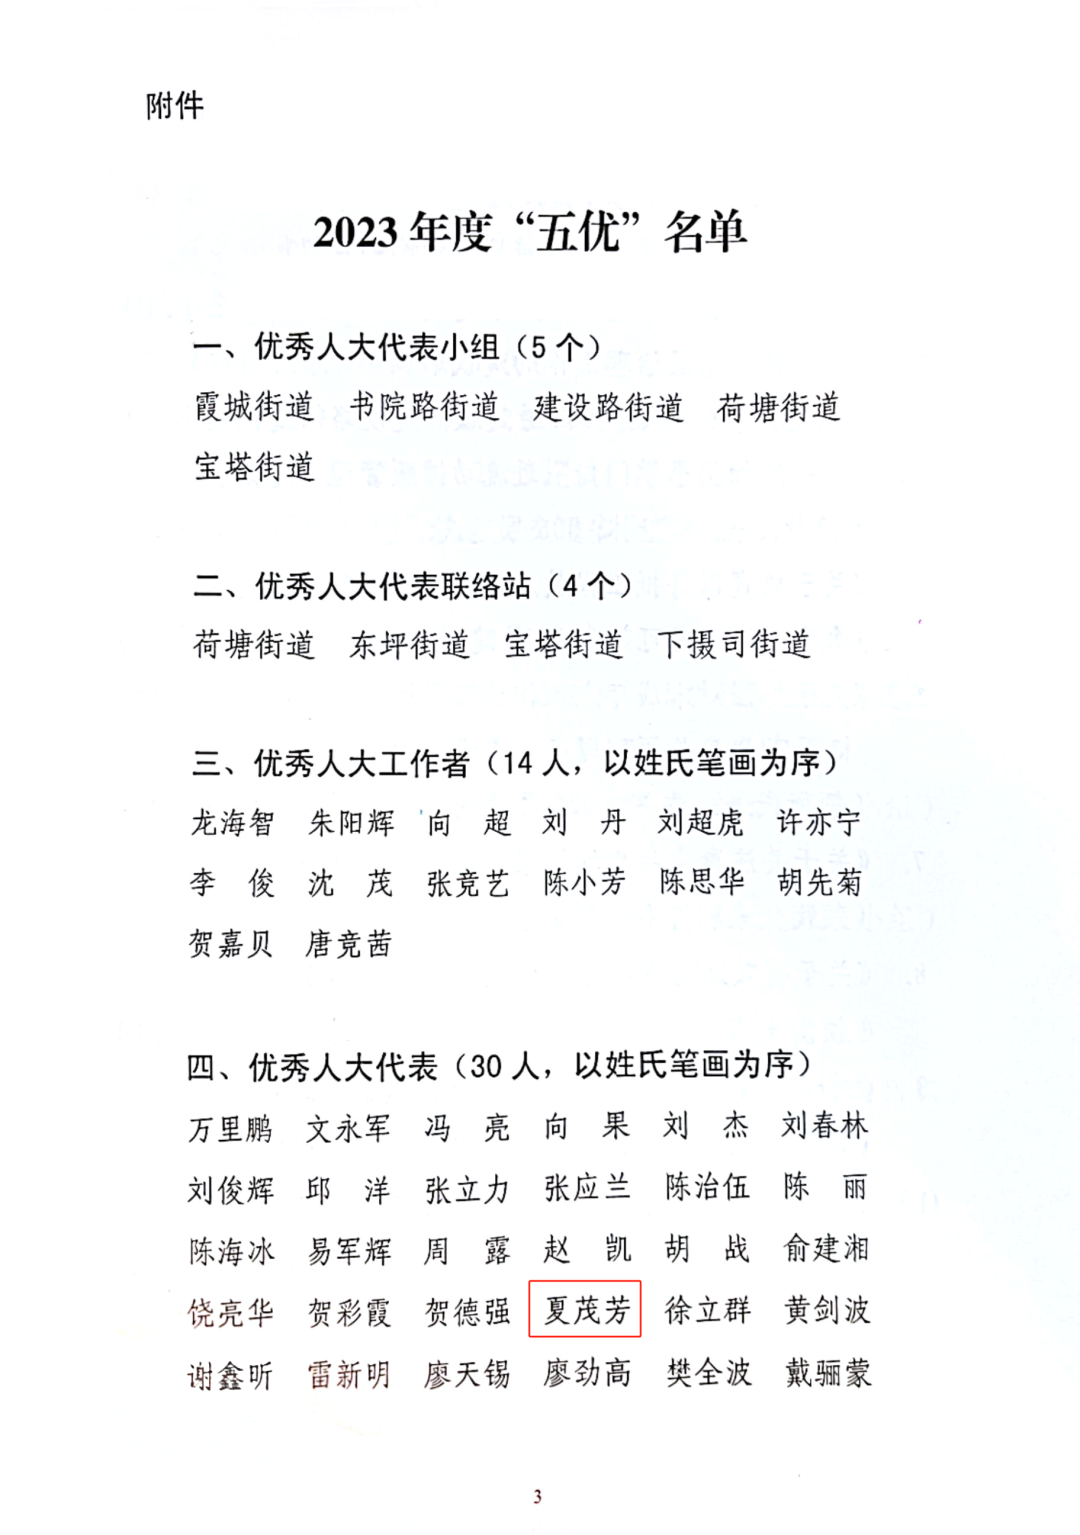 爱尔眼科湘潭地区经营院长夏茂芳被评选为岳塘区“2023年度优秀人大代表”插图